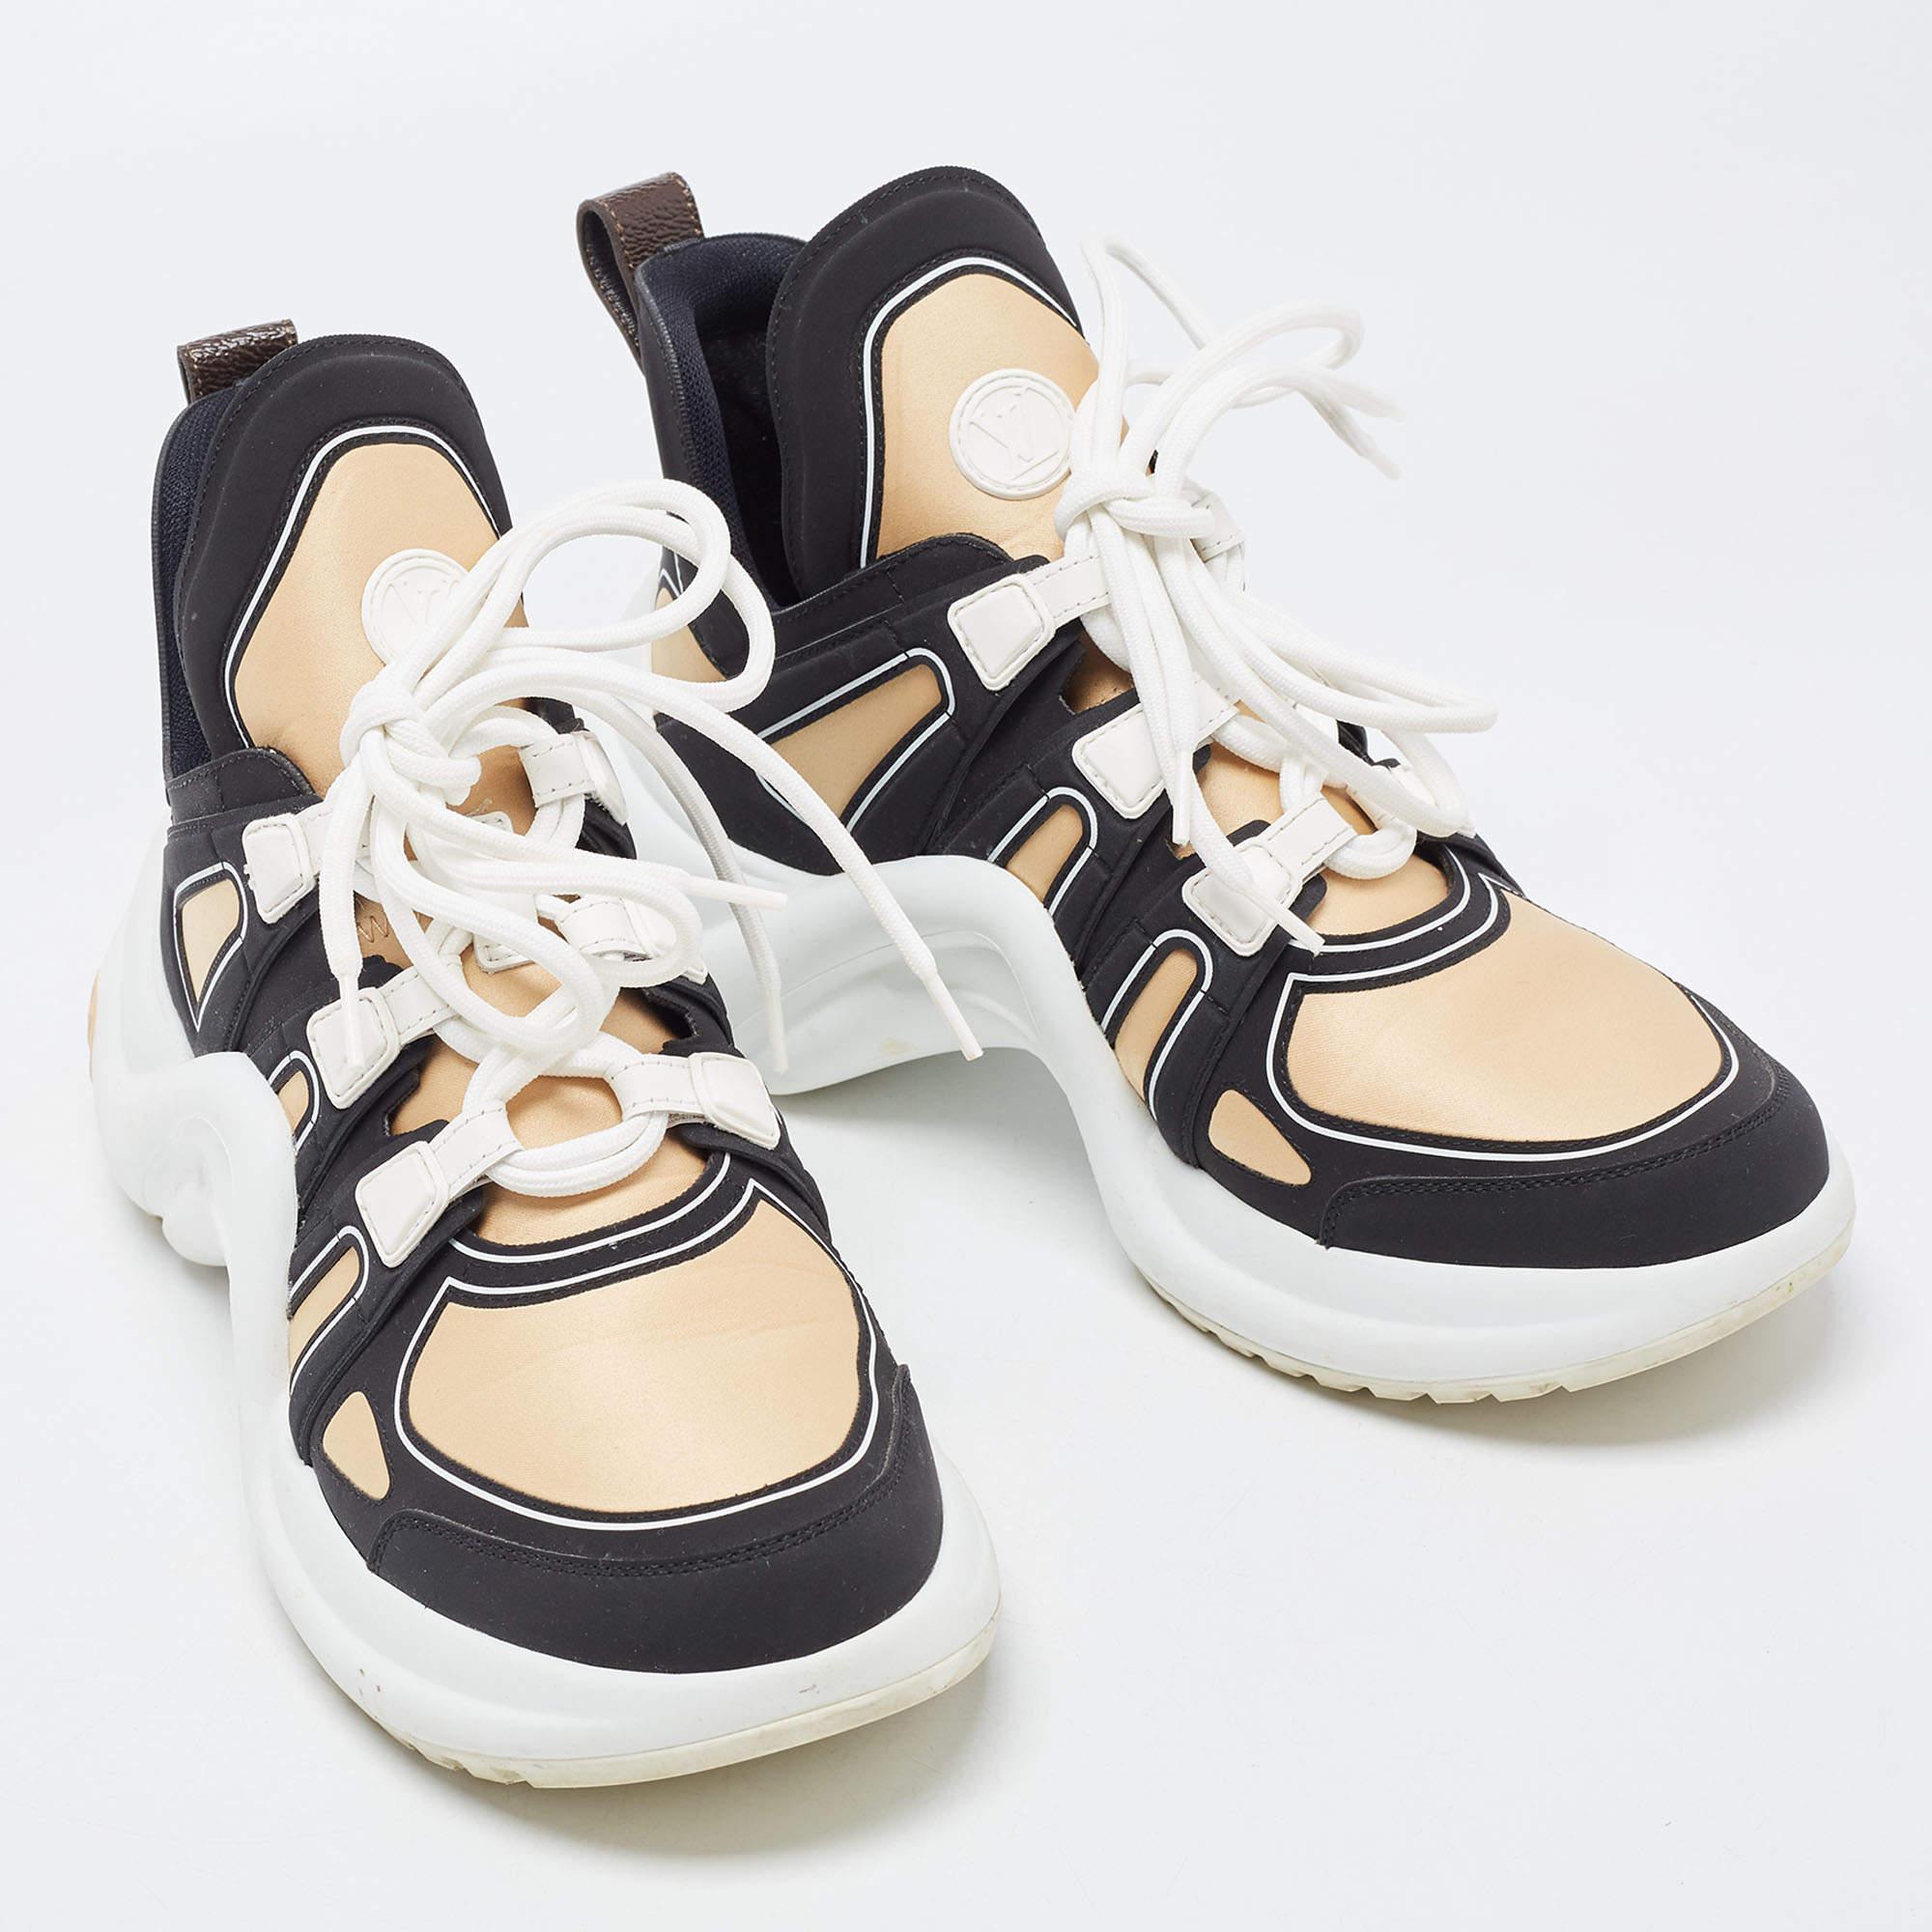 Louis Vuitton Brown/Schwarz Nylon und Leder Archlight Sneakers Größe 39 Damen